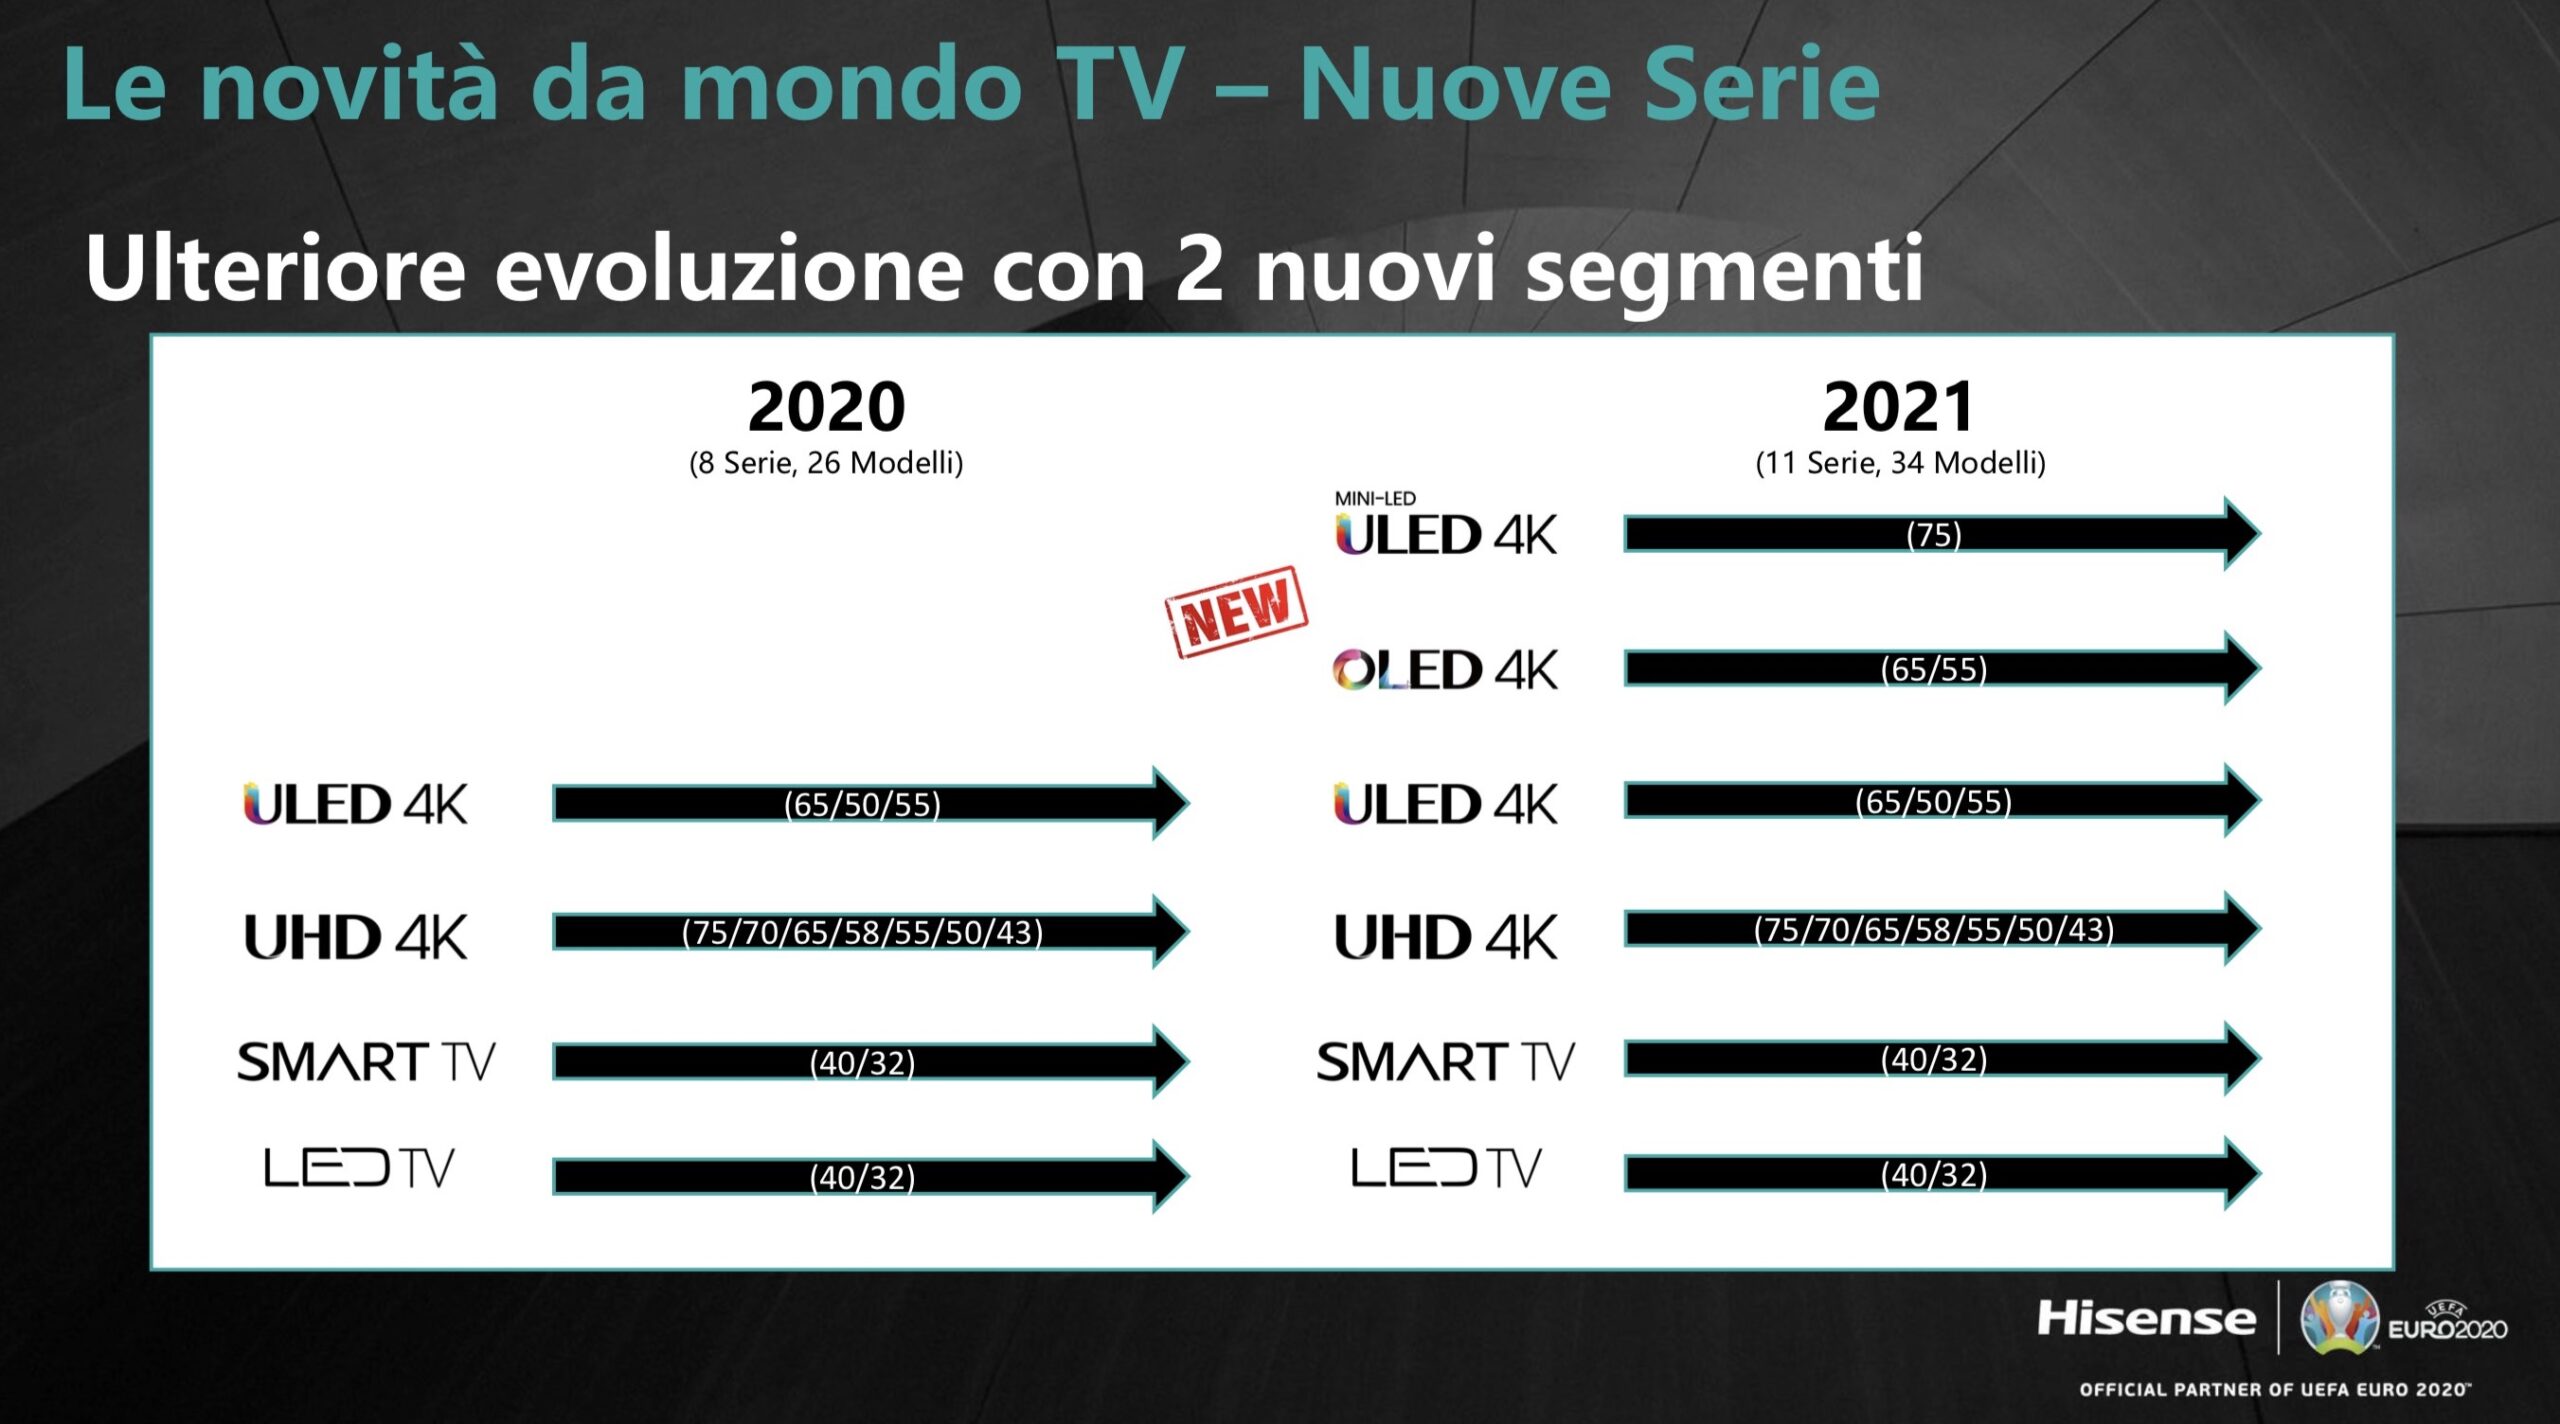 Hisense nel 2021: non solo laser TV ma anche Mini LED, OLED e tanti TV per tutte le esigenze